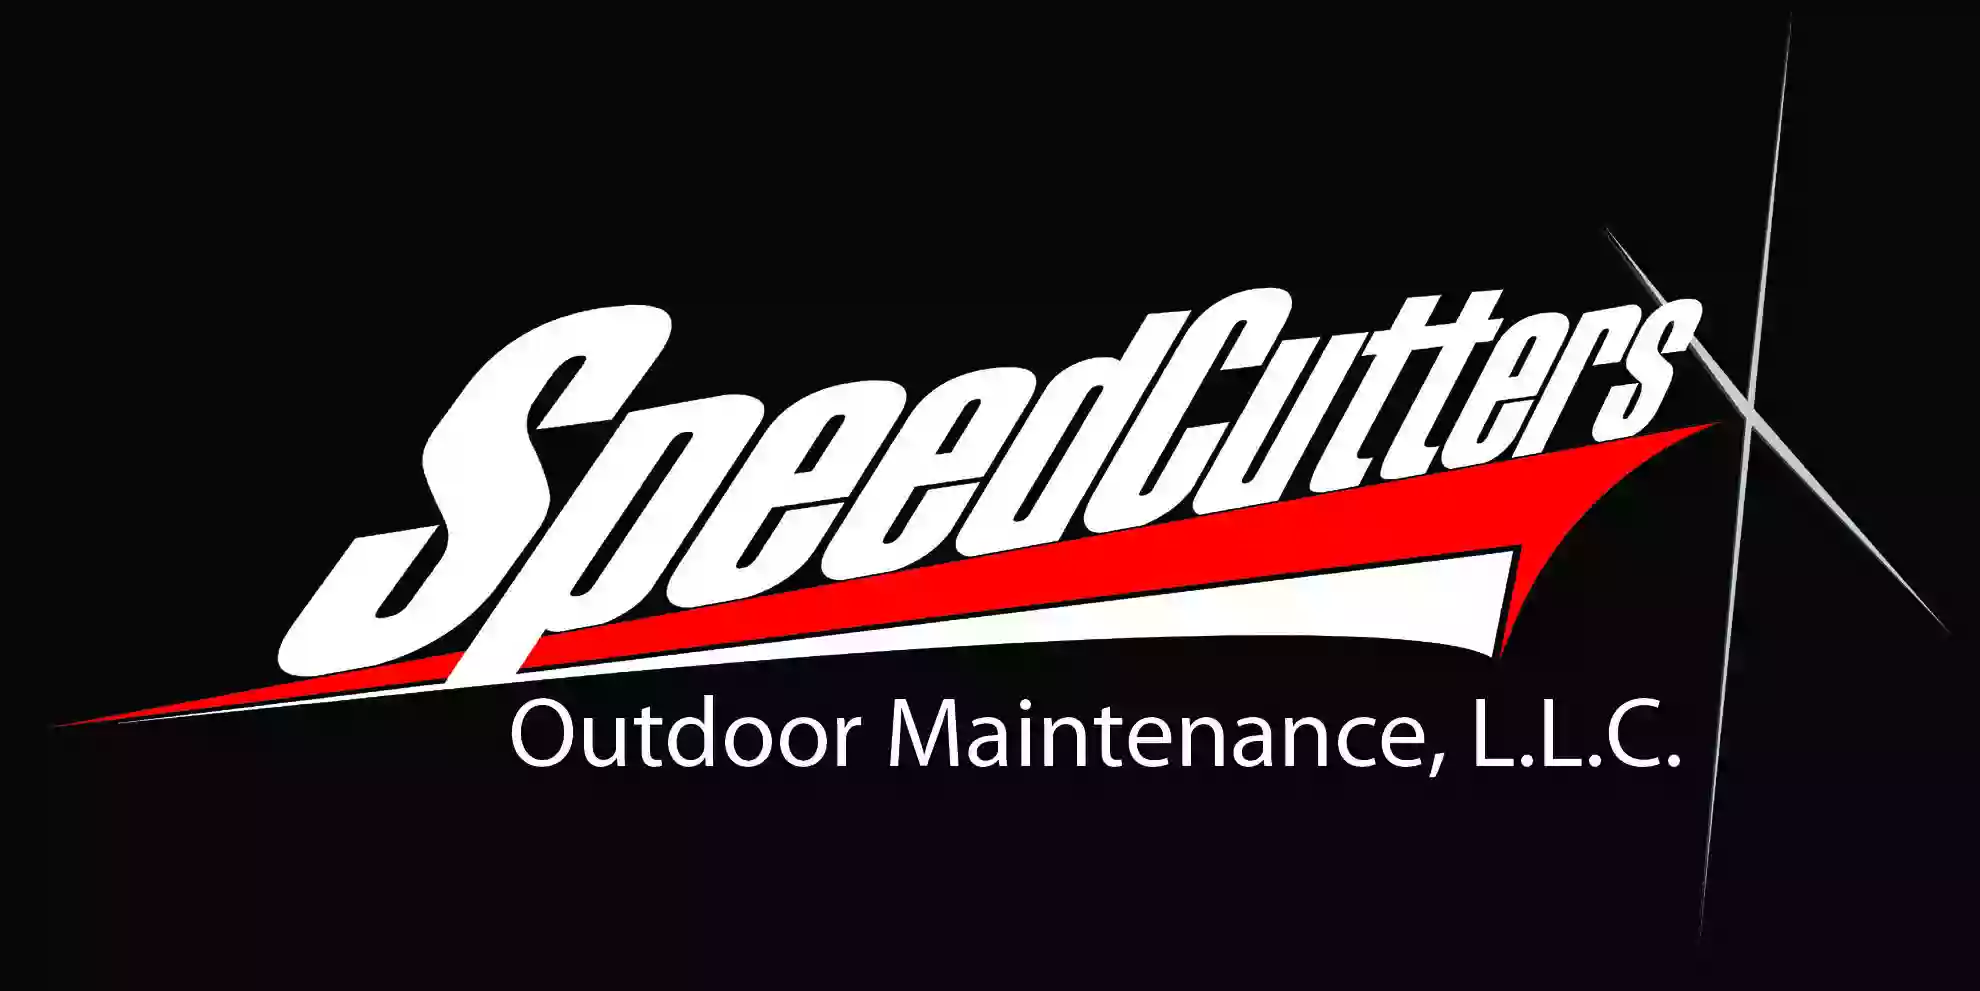 Speedcutters Outdoor Maintenance, LLC